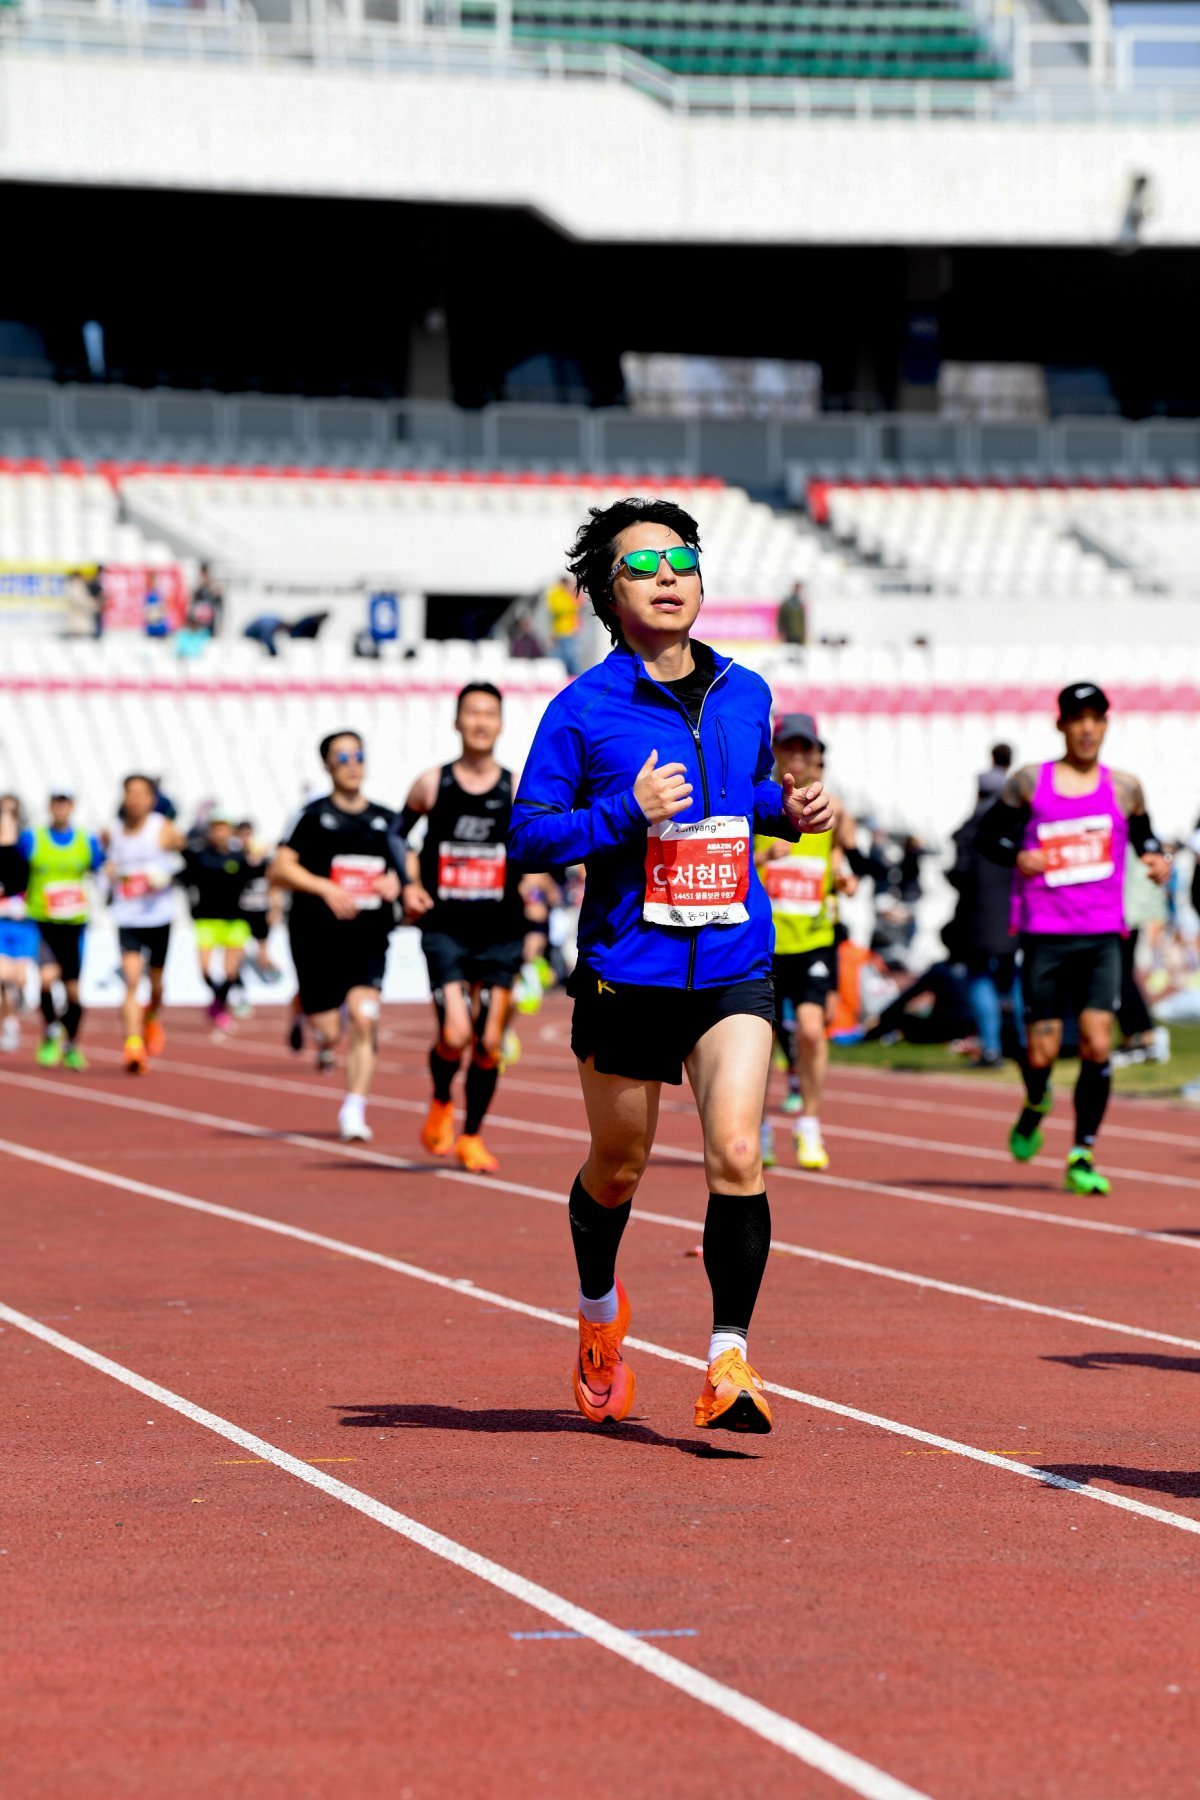 서현민 교수는 올 3월 서울국제마라톤대회에서 풀코스 도전 네 번 만에 3시간38분18초를 기록했다. 서 교수가 결승선을 앞두고 막바지 힘을 내고 있다. 서현민 교수 제공